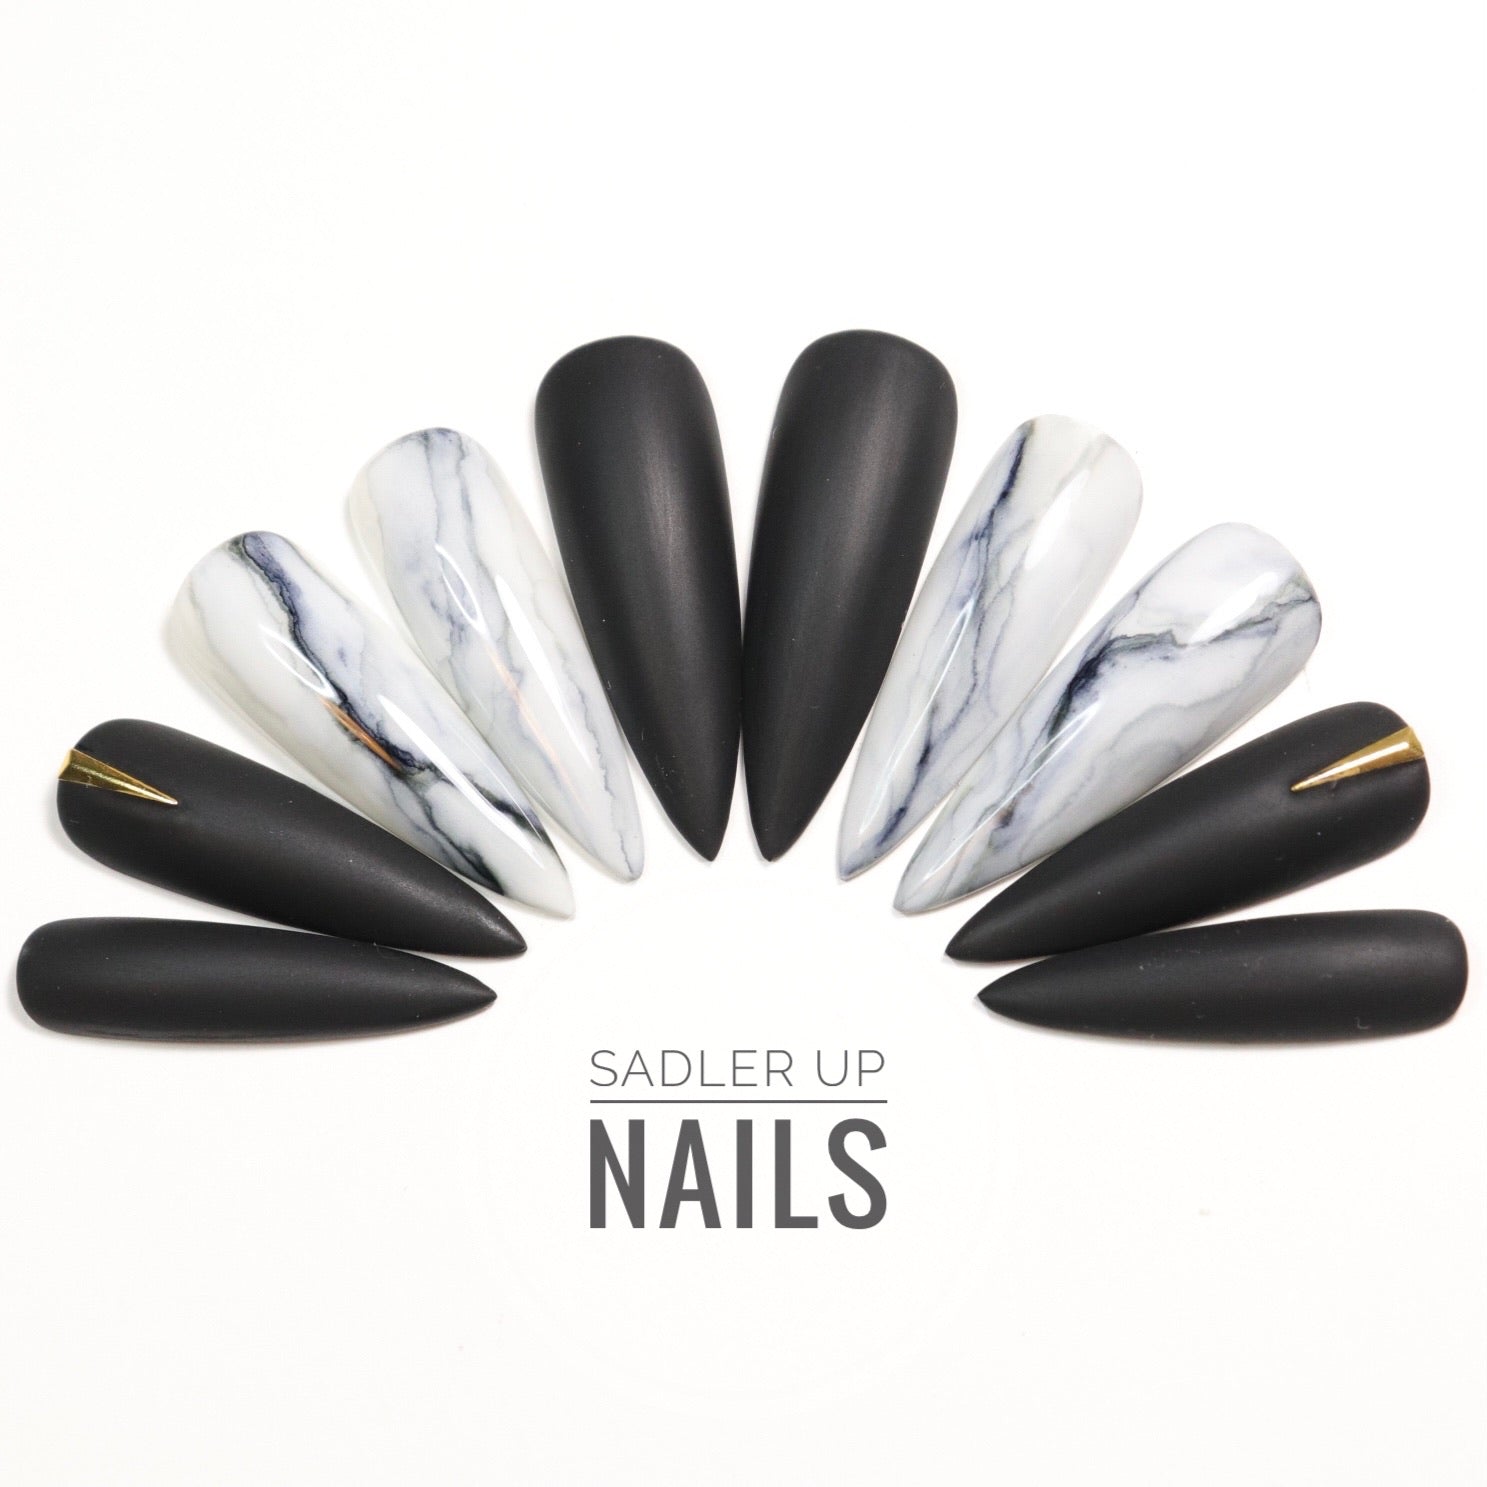 Sadler Up Nails. Press on nails Canada. Glue on nails